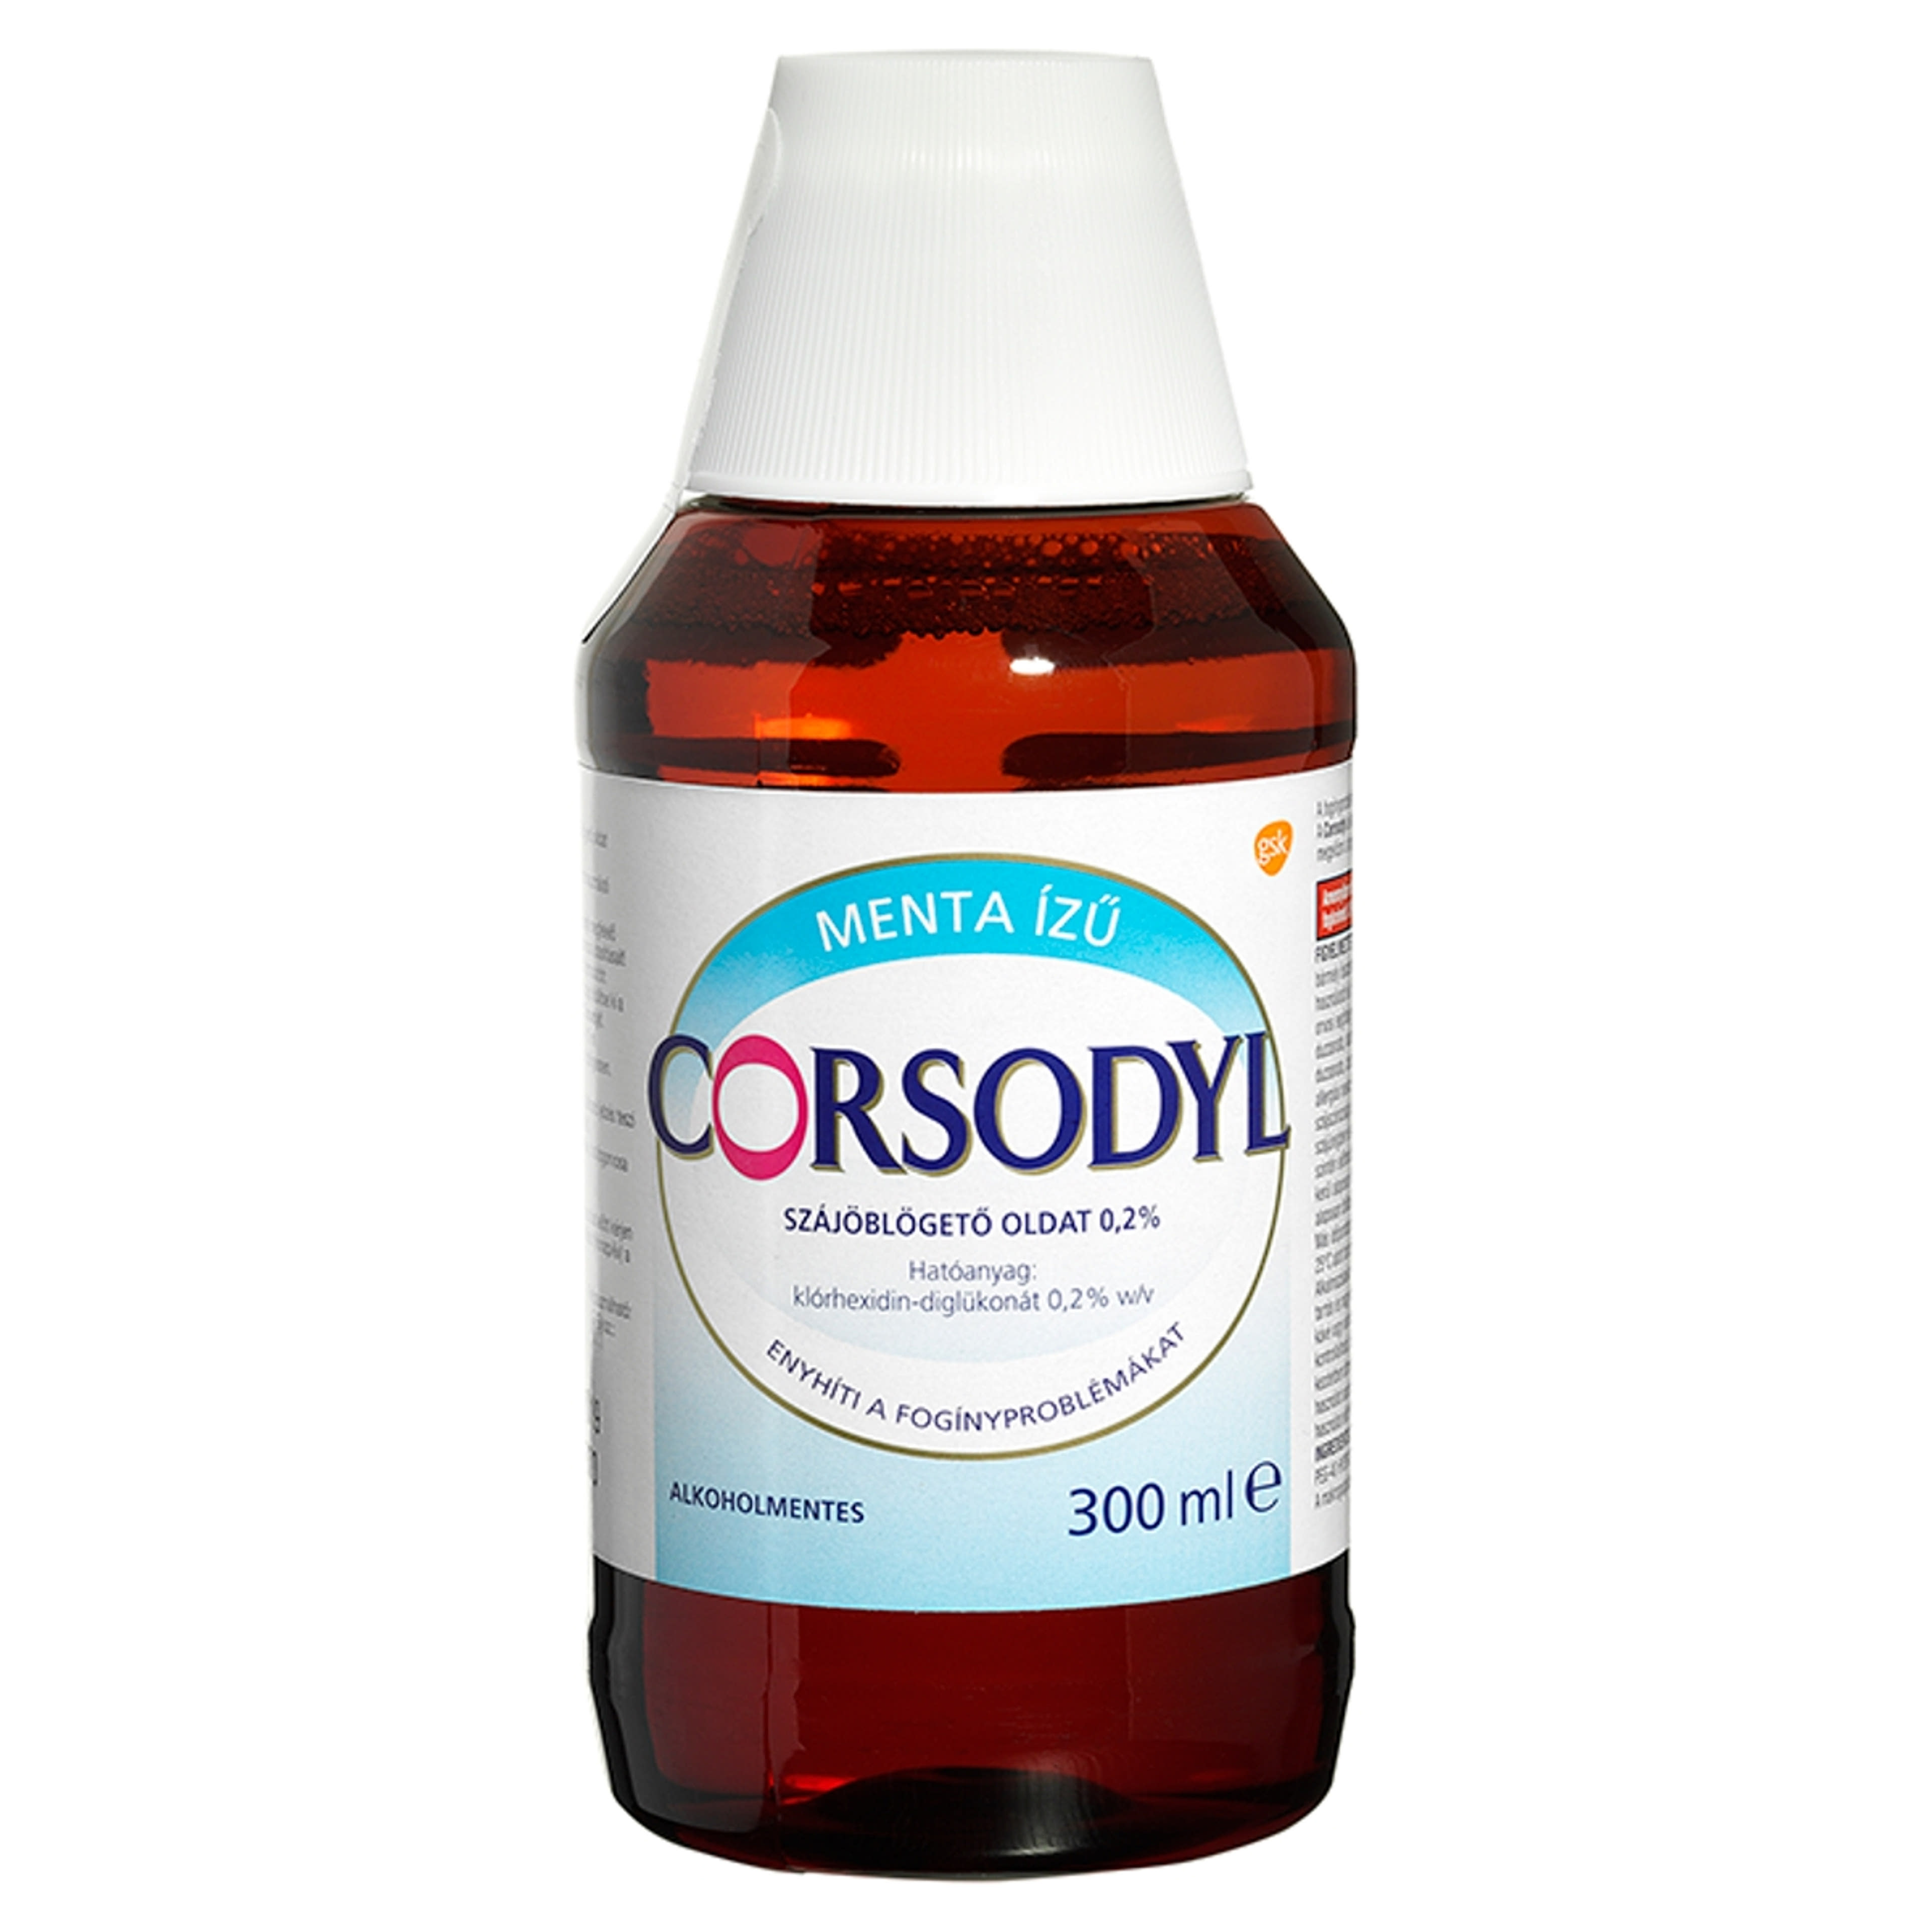 Corsodyl Alkoholmentes szájöblögető oldat - 300 ml-1